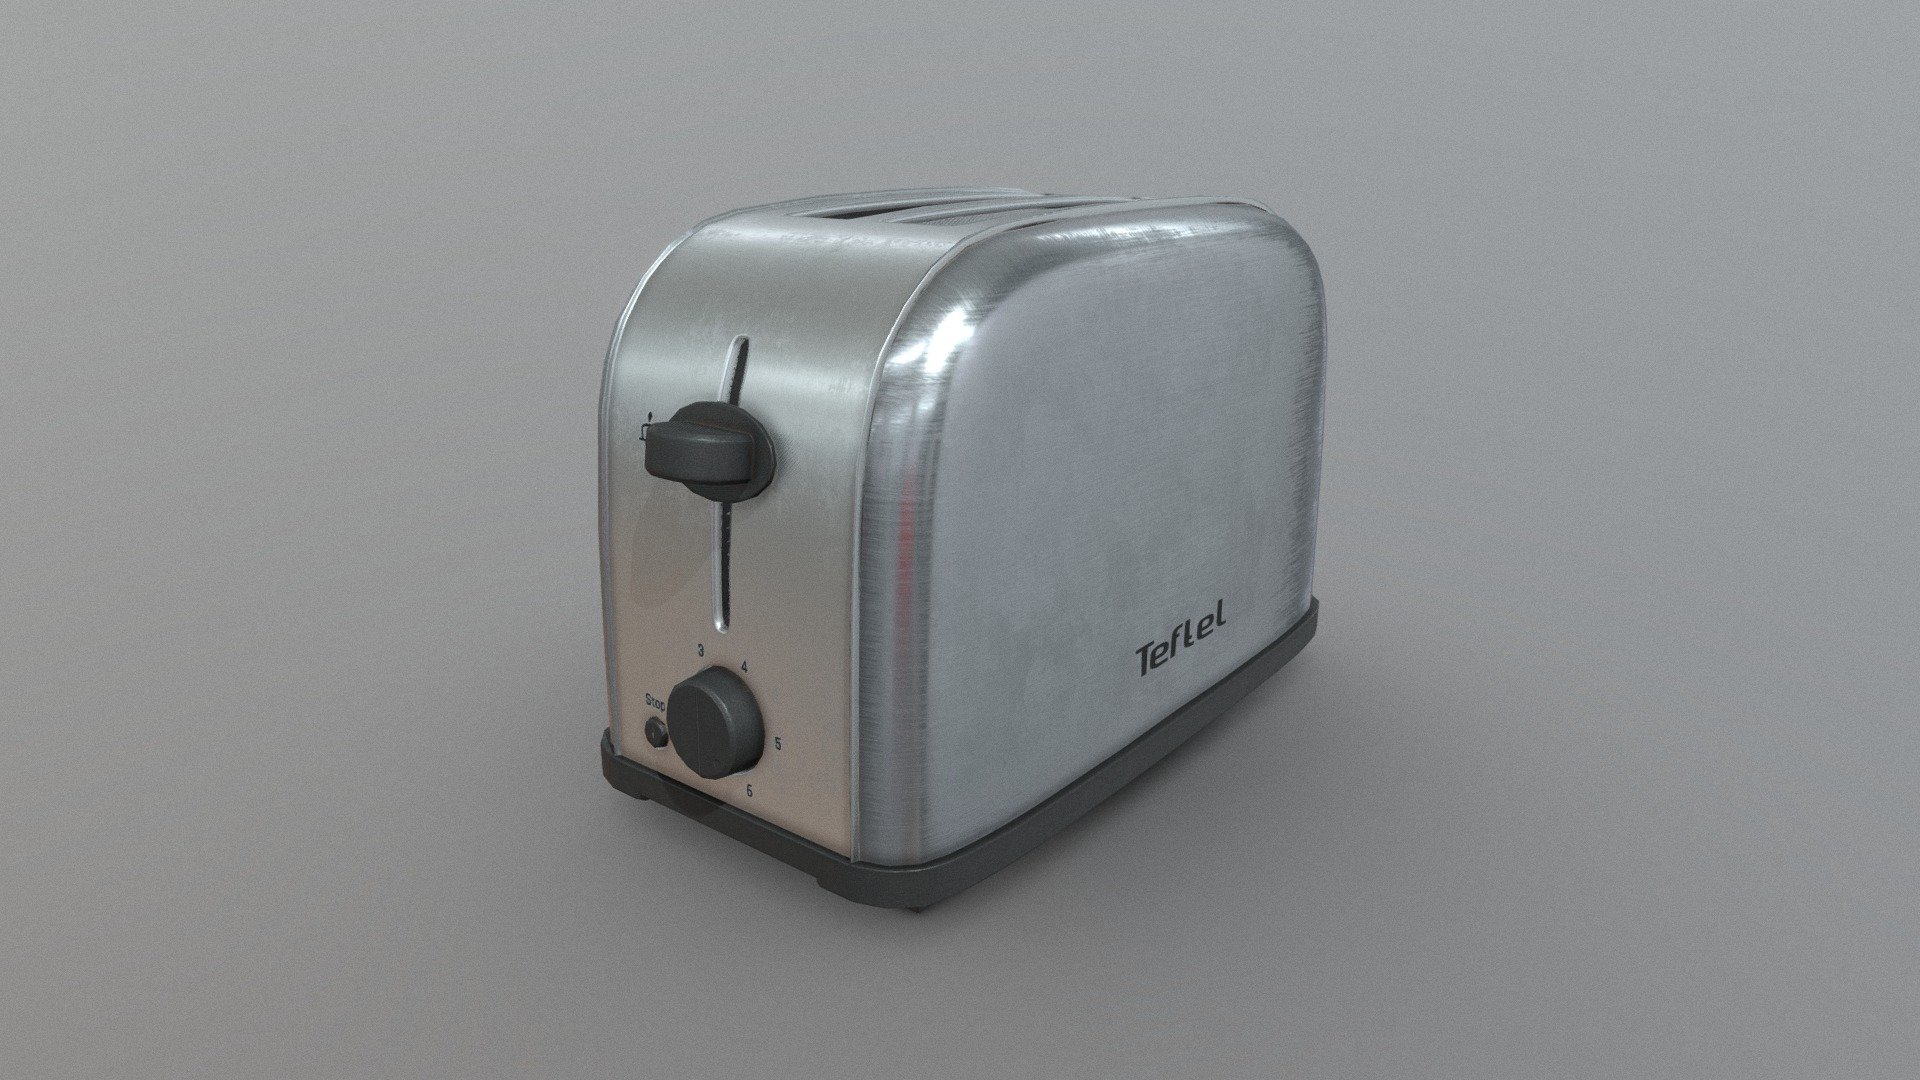 Simple toaster model.

Created in blender 2.8.

Artstation:
https://www.artstation.com/artwork/baYYGk - Toaster - Download Free 3D model by Artem P (@temp0.crazy) 3d model